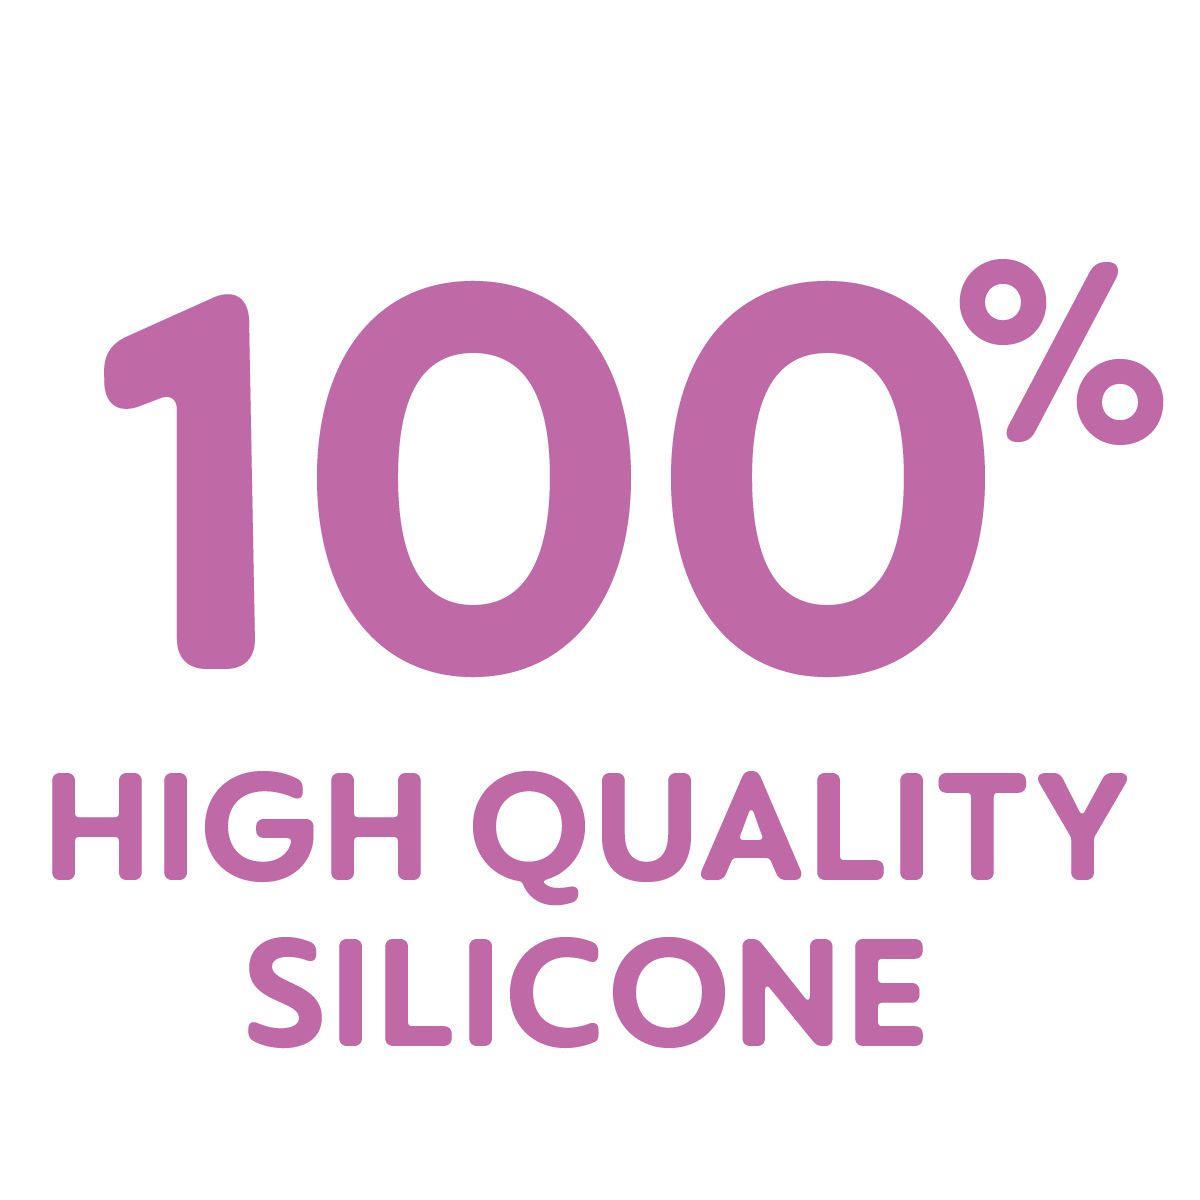 Produkten är gjord av 100 % silikon av hög kvalitet – särskilt hygienisk, hållbar och säker